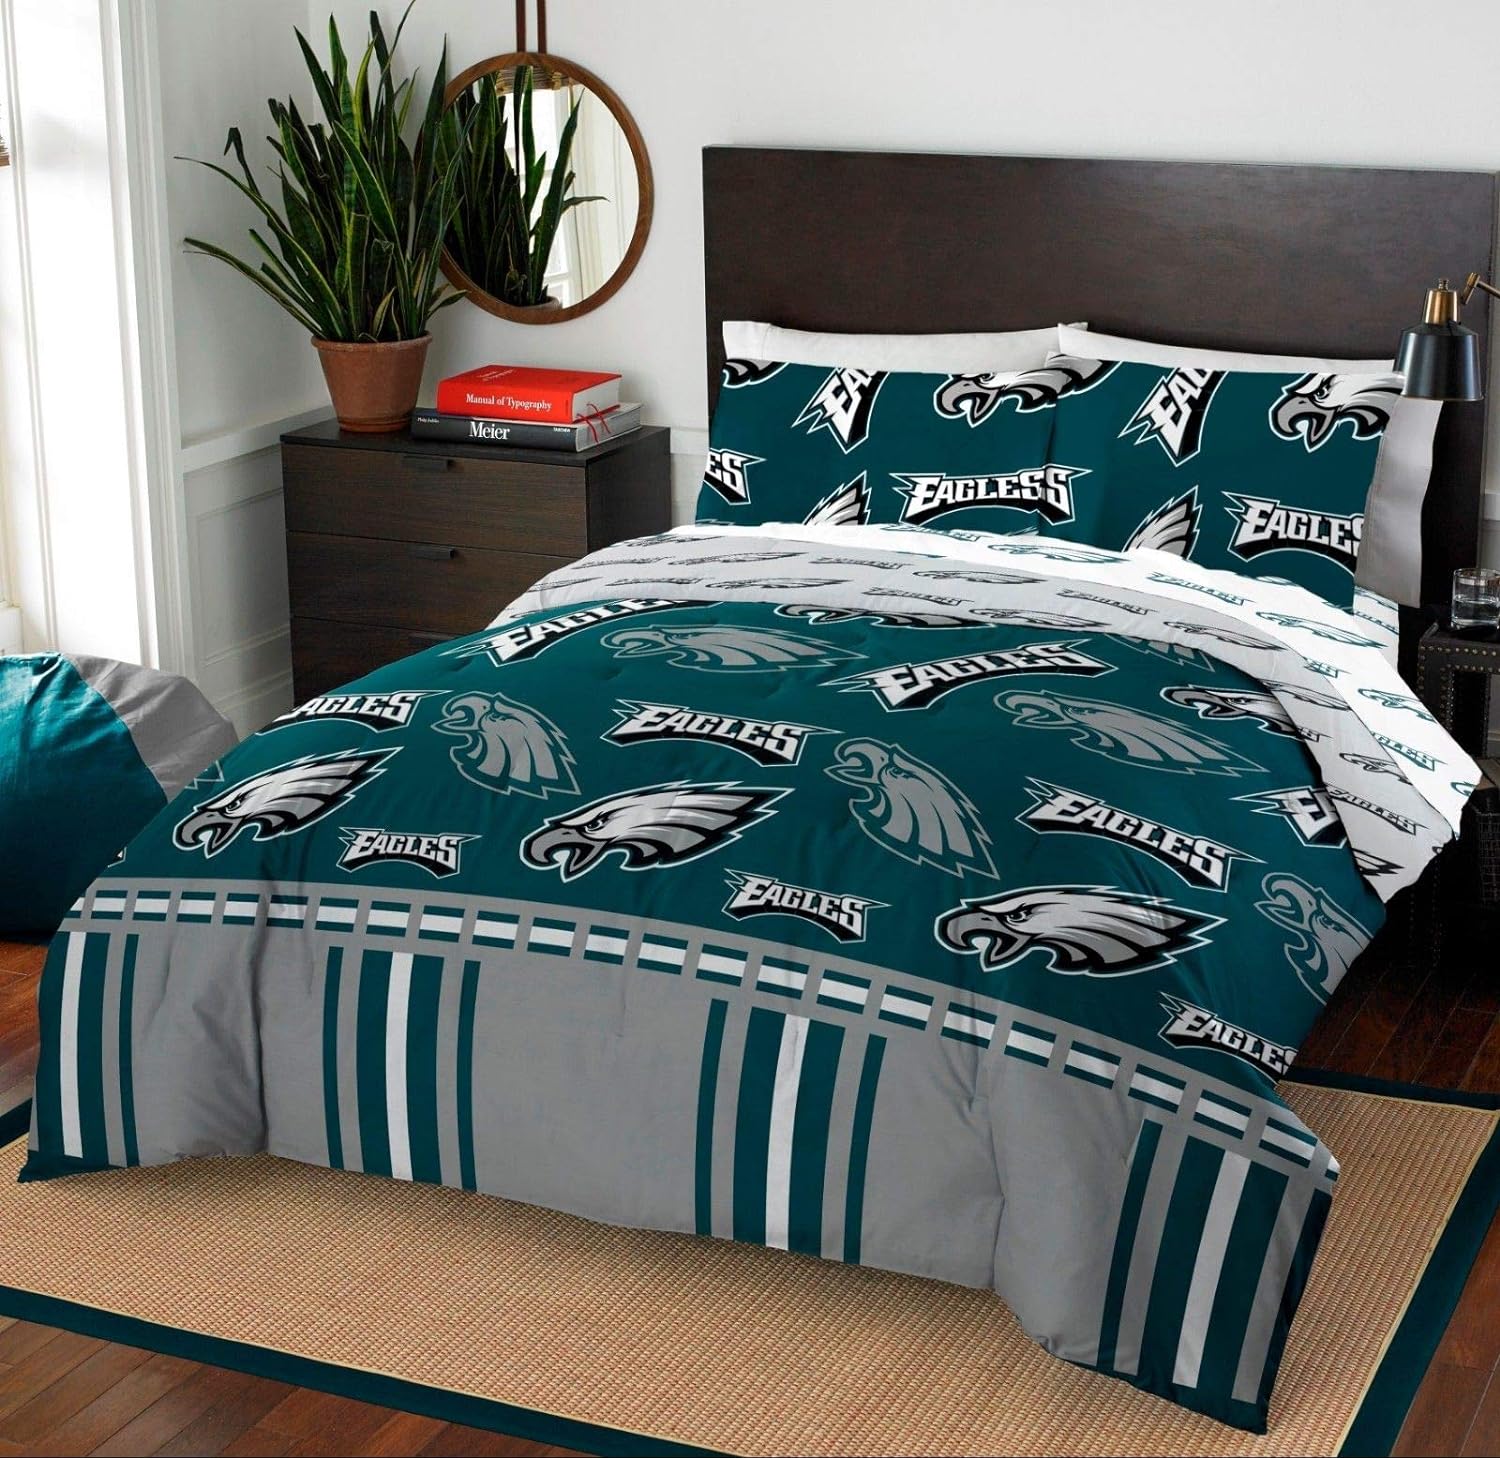 NFL Philadelphia Eagles Queen Comforter & Sheet Set (5 Piece Bedding)